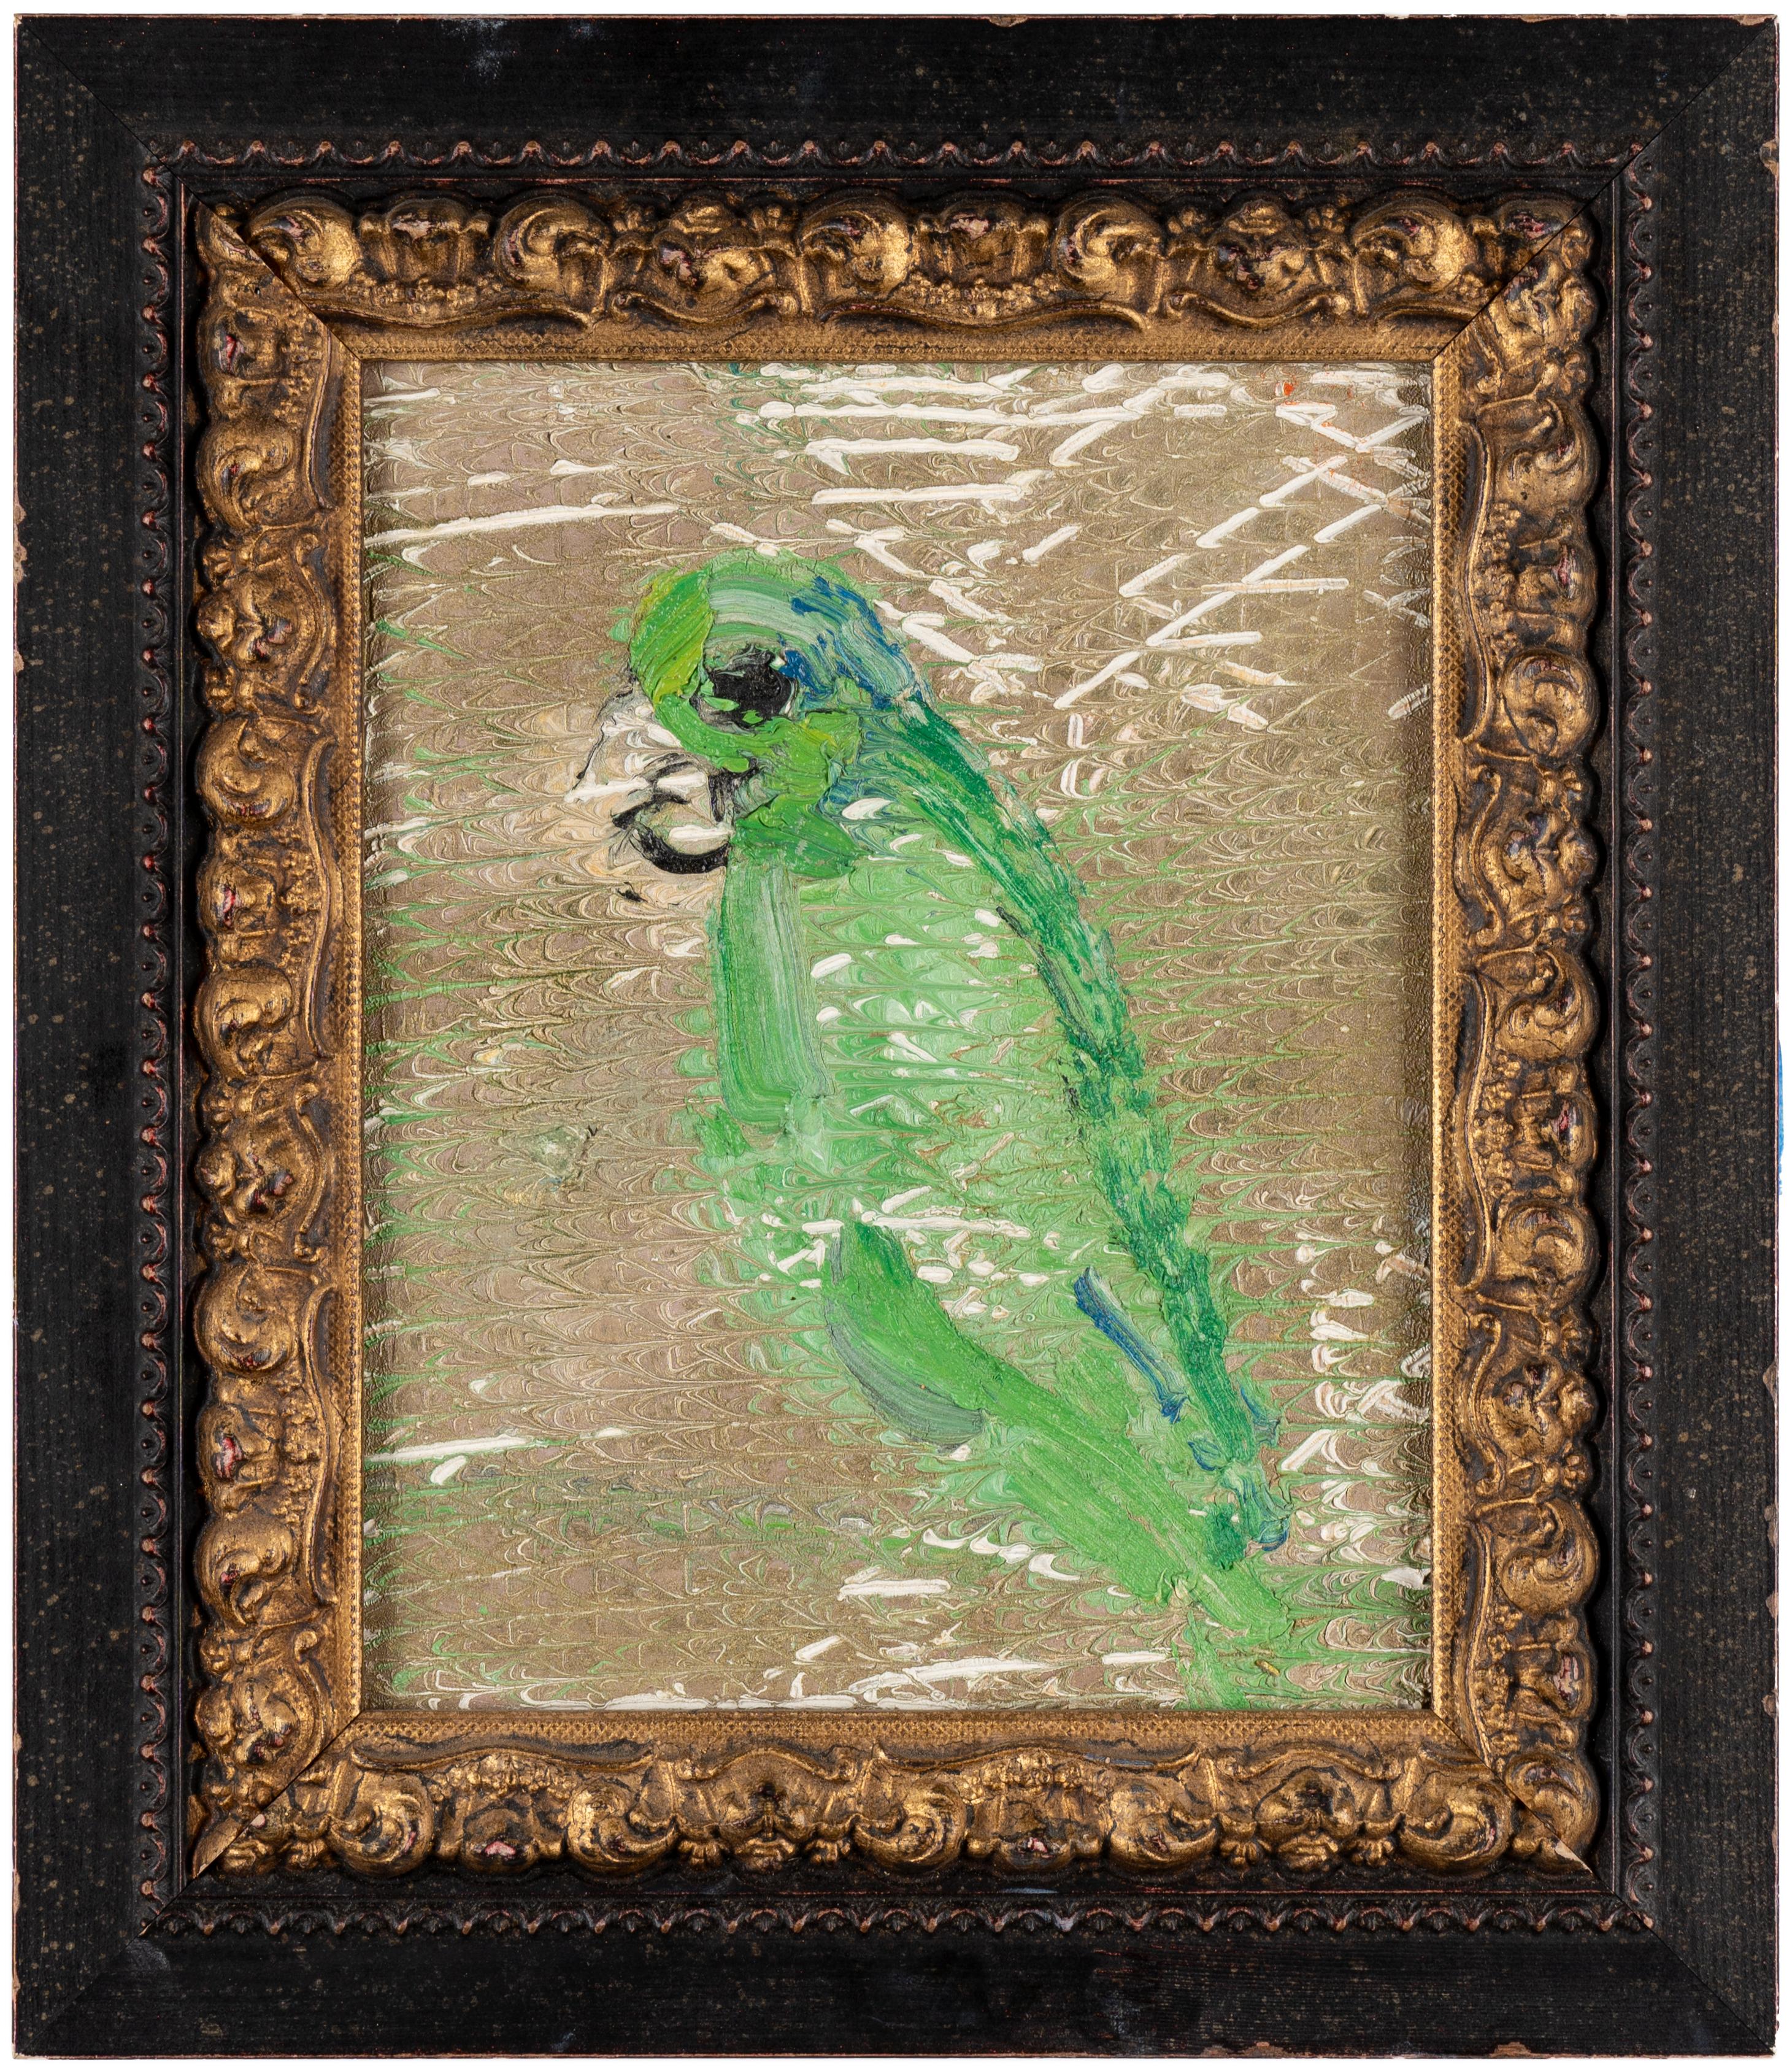 Hunt Slonem "Untitled" Grüner Amazonas-Vogel auf Gold
Ein gemalter grüner Amazonasvogel auf einem goldfarbenen Metallhintergrund im alten Stil von Hunt Slonem in einem antiken Rahmen.

Ungerahmt: 10 x 8 Zoll
Gerahmt: 14,5 x 12,6 Zoll
*Gemälde ist